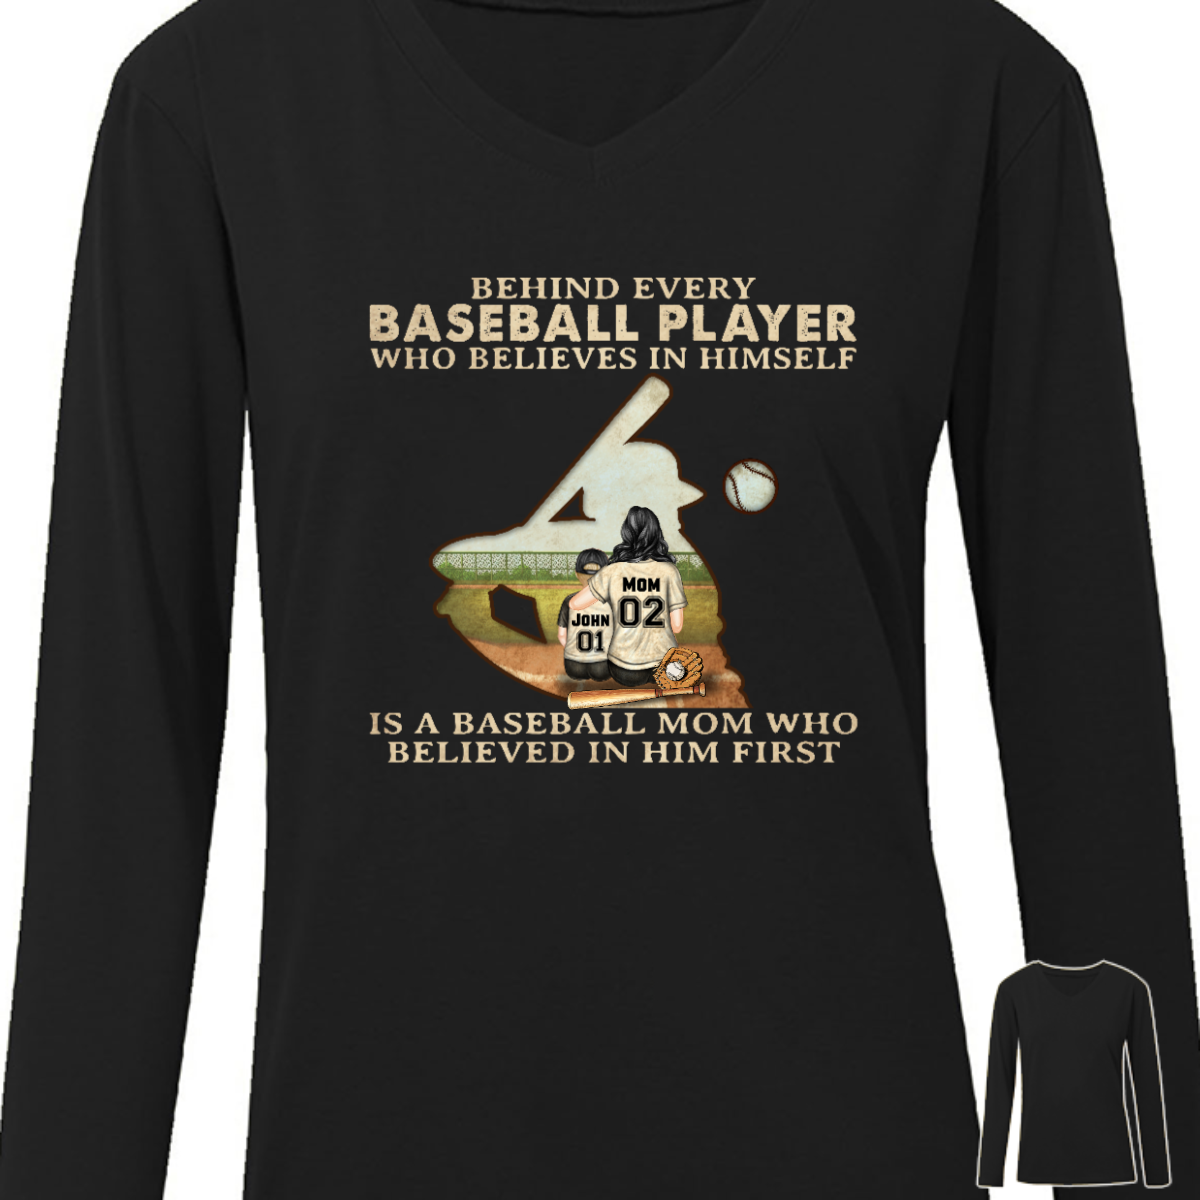 自分を信じるすべての野球選手の背後にいる野球ママ - 母親への贈り物 - パーソナライズされたカスタム長袖シャツ